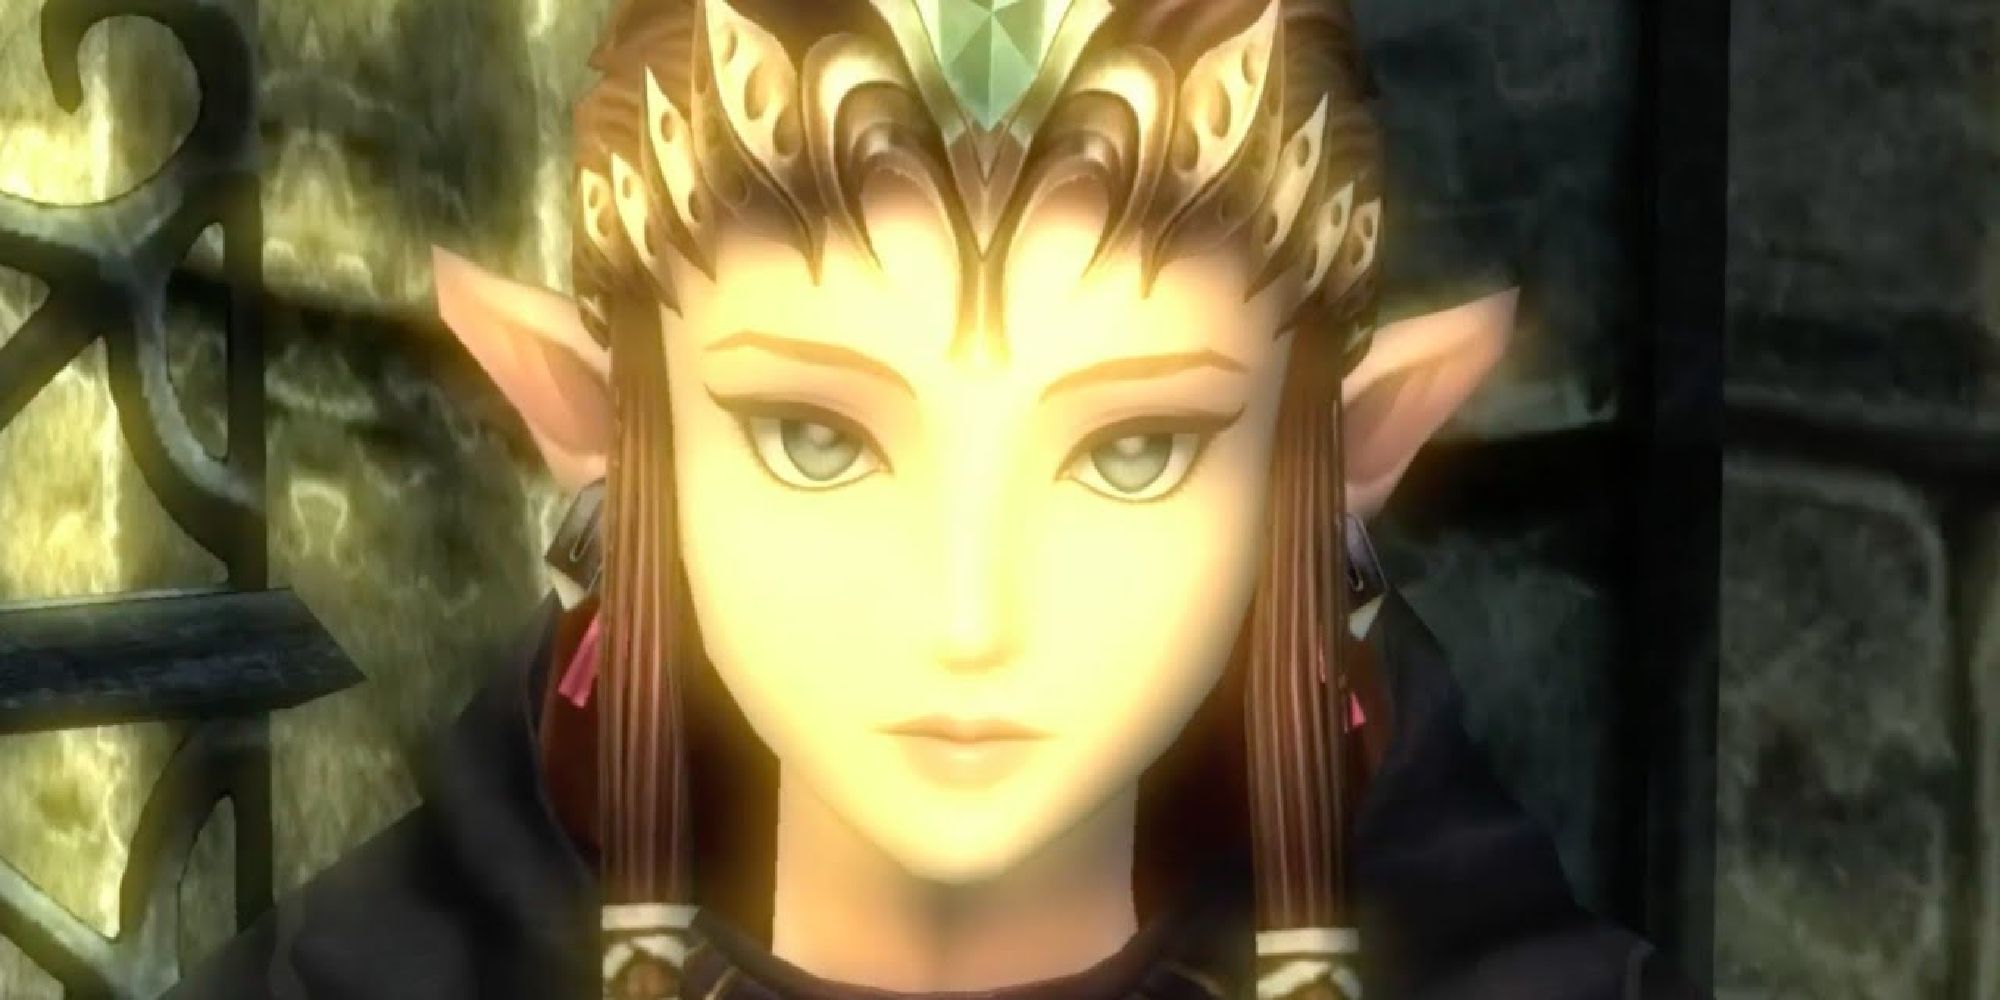 Zelda wearing her hooded cloak locked in Hyrule Castle in Twilight Princess